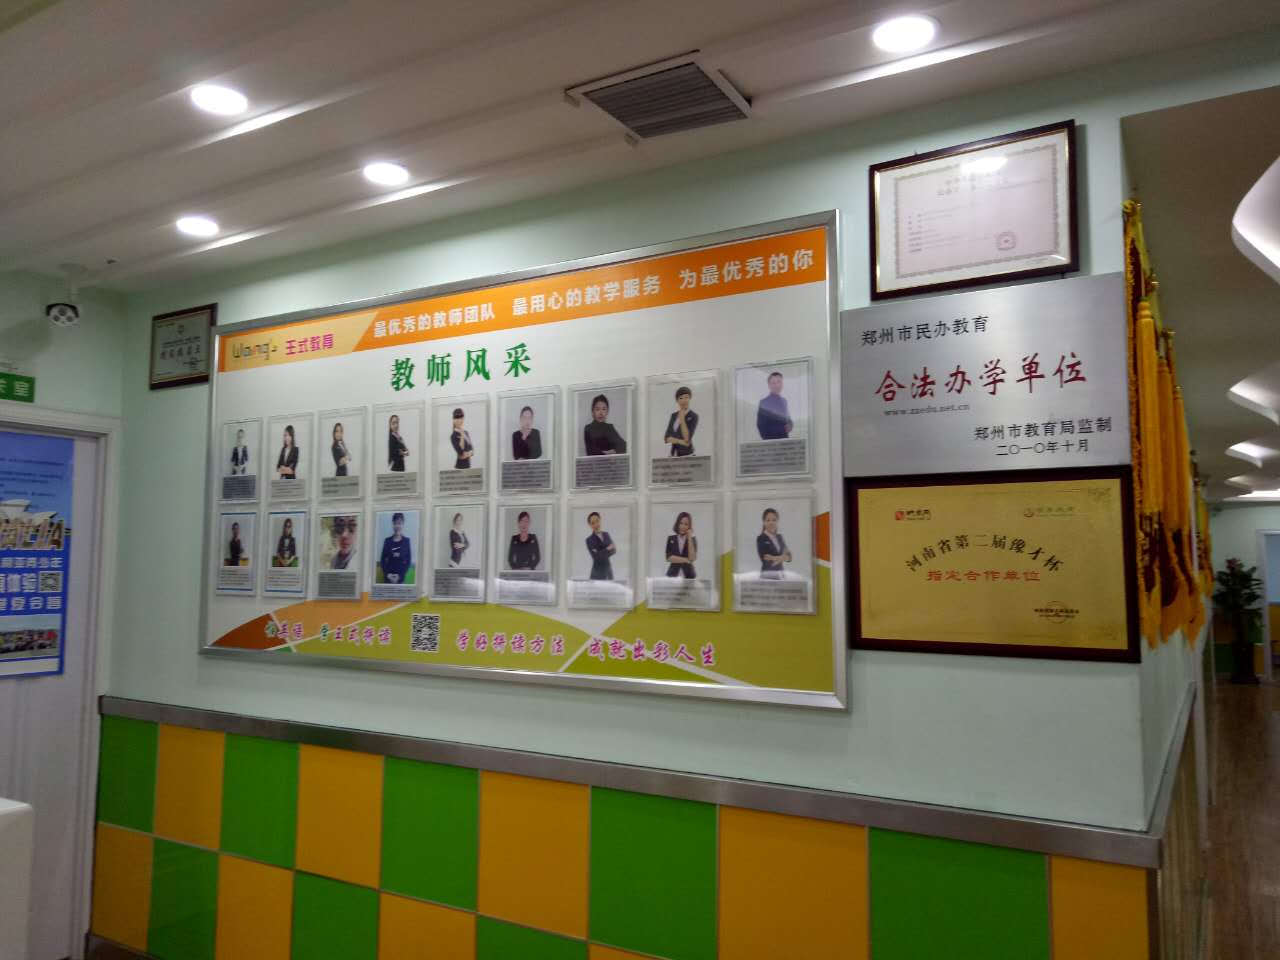 郑州市管城回族区王式拼读英语培训中心企业形象